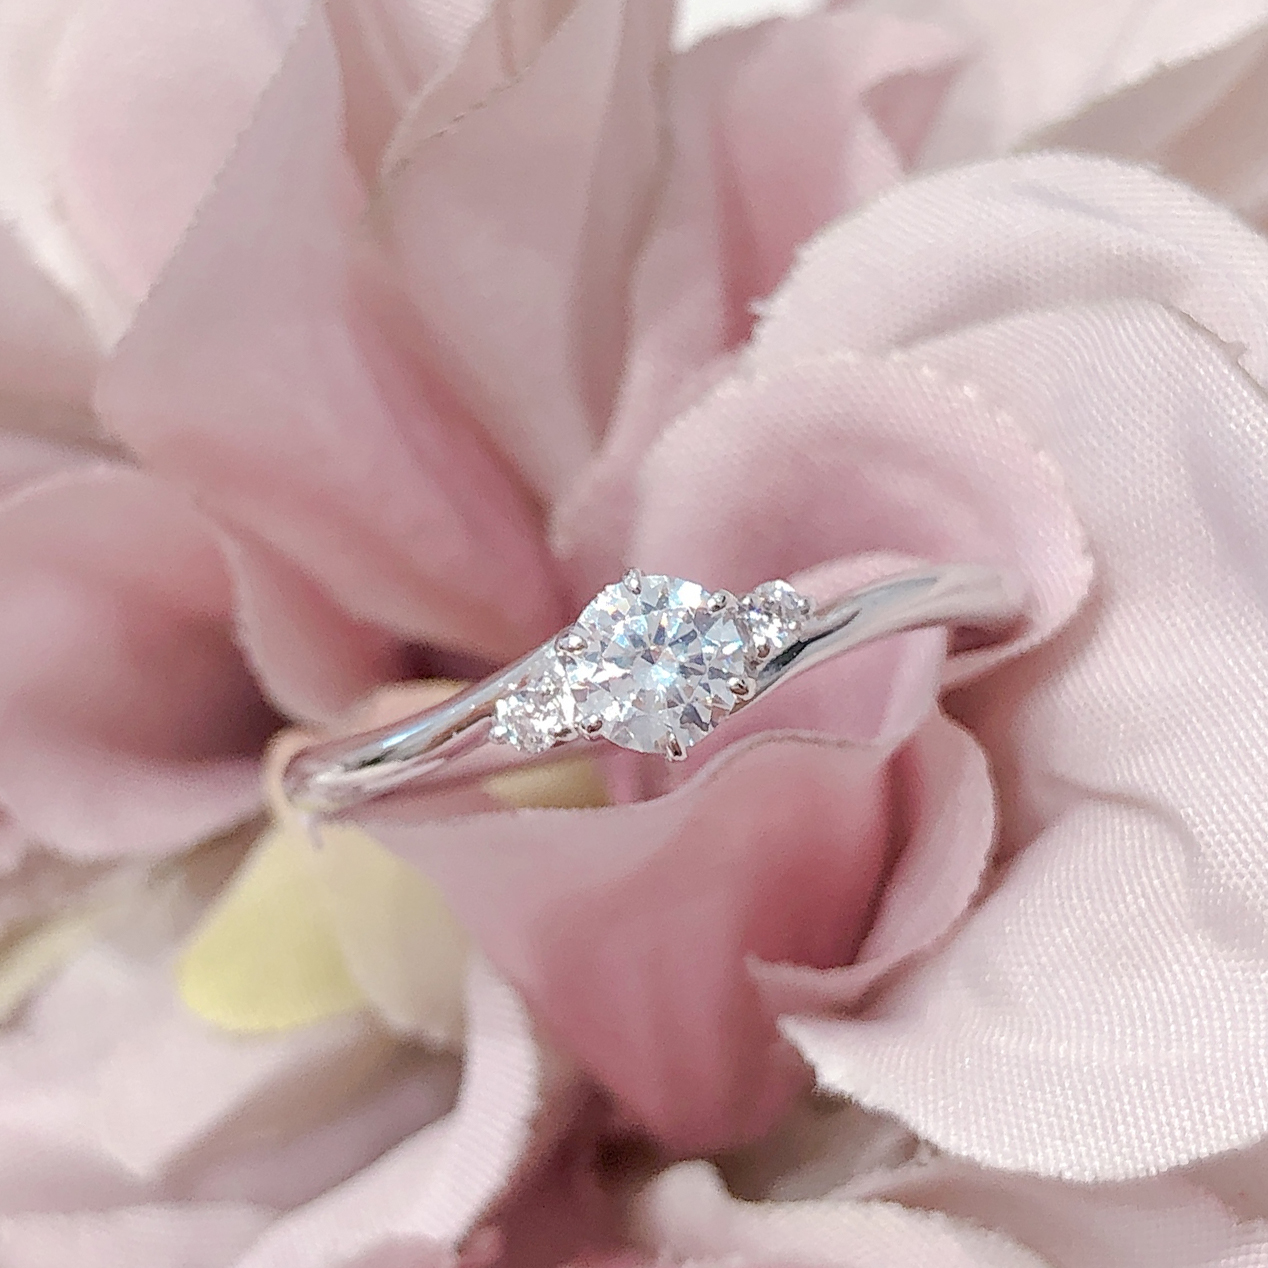 中央のダイヤモンドに花を添えるようにセットされたサイドのメレダイヤモンドが可憐な印象を与えてくれる婚約指輪です。